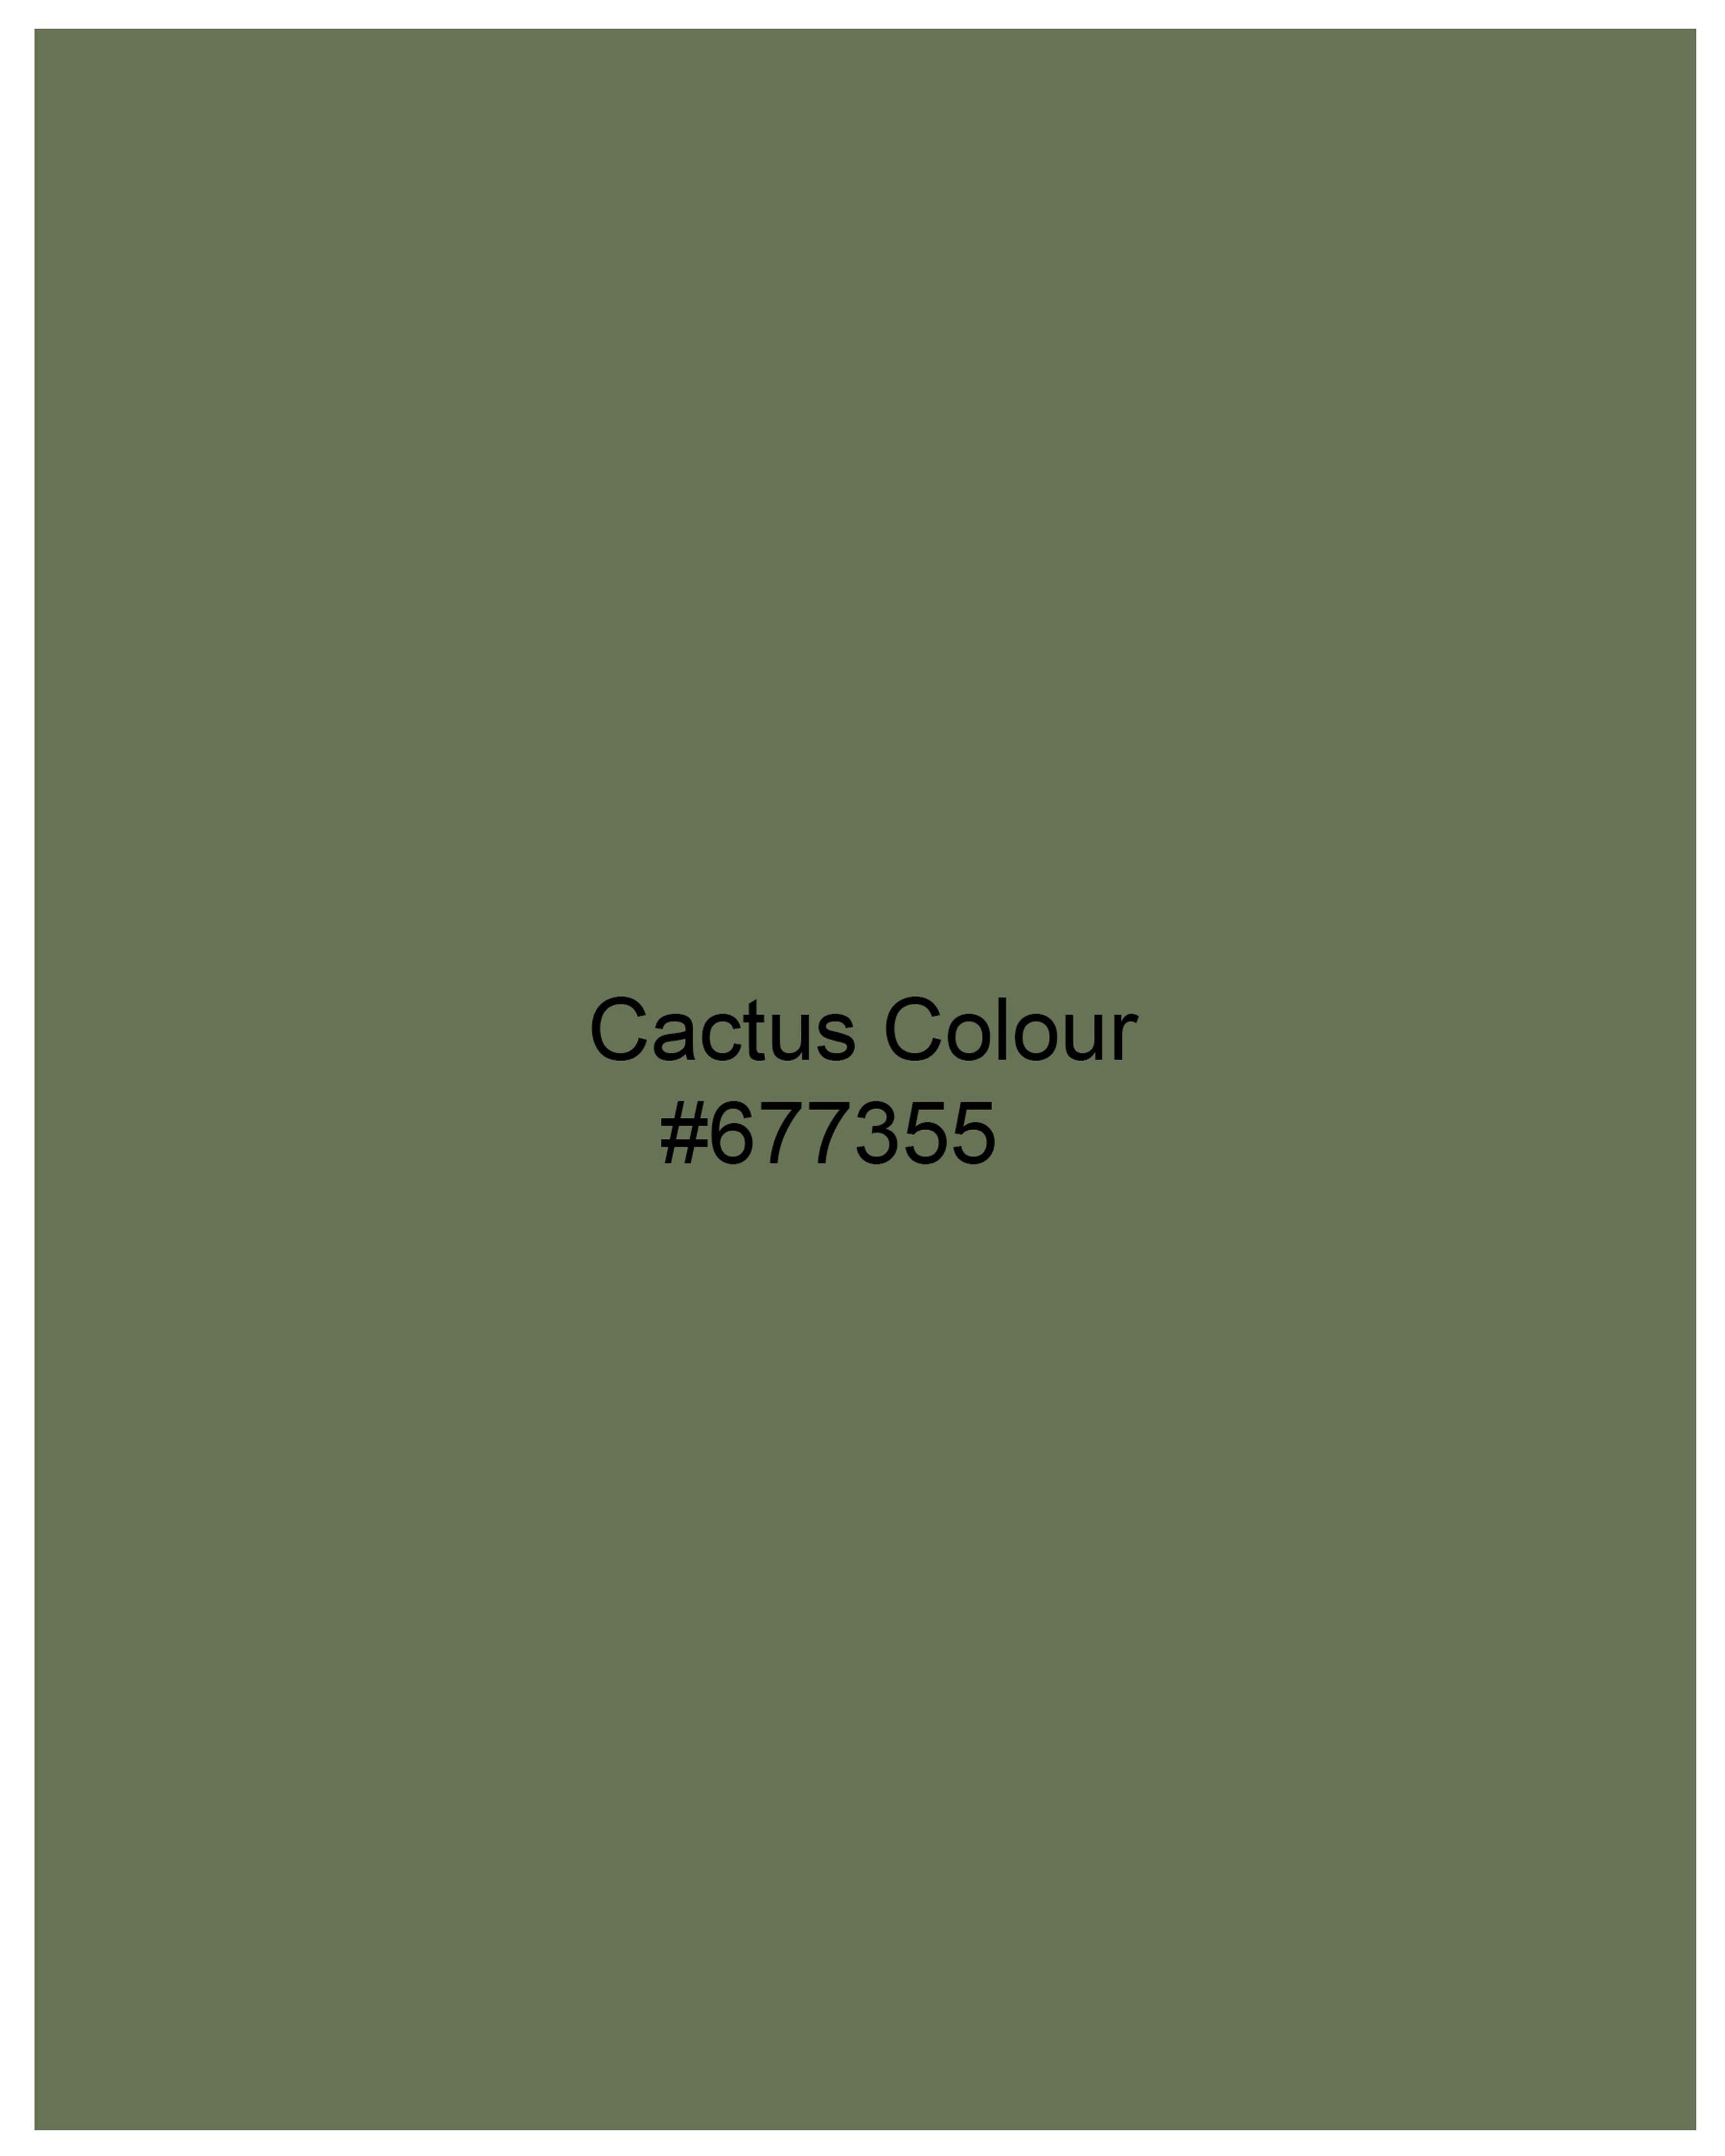 Cactus Green Cross Buttoned Bandhgala Blazer BL2073-CBG2-36, BL2073-CBG2-38, BL2073-CBG2-40, BL2073-CBG2-42, BL2073-CBG2-44, BL2073-CBG2-46, BL2073-CBG2-48, BL2073-CBG2-50, BL2073-CBG2-52, BL2073-CBG2-54, BL2073-CBG2-56, BL2073-CBG2-58, BL2073-CBG2-60